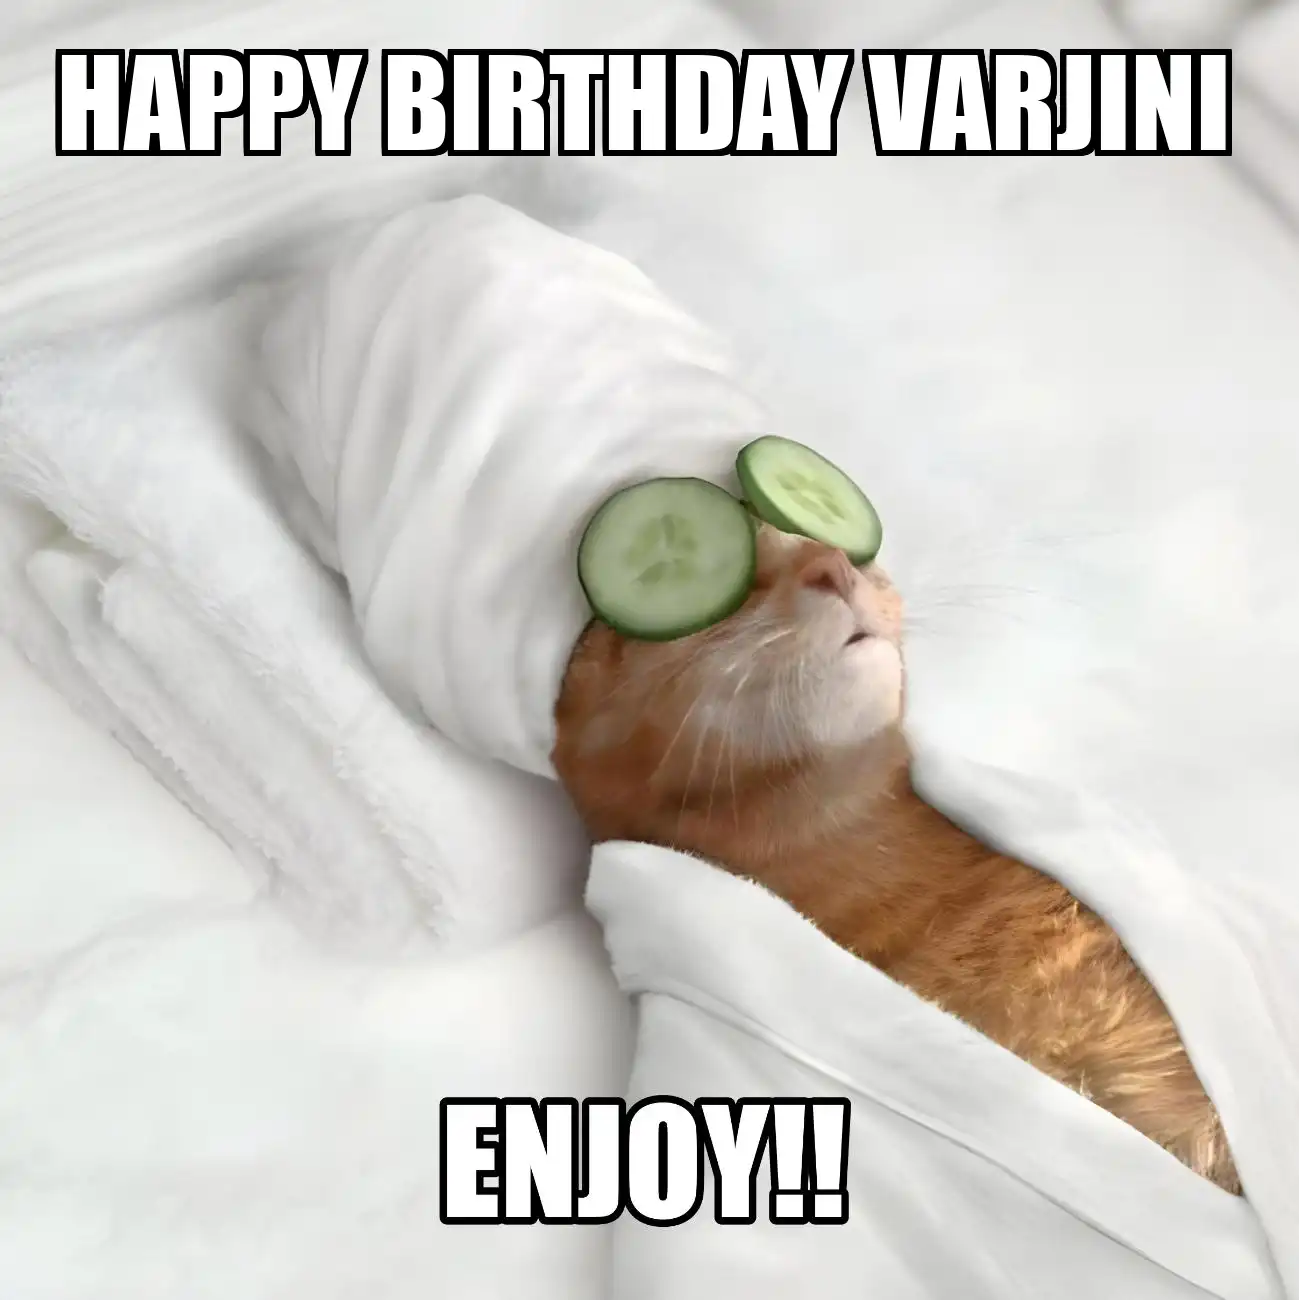 Happy Birthday Varjini Enjoy Cat Meme